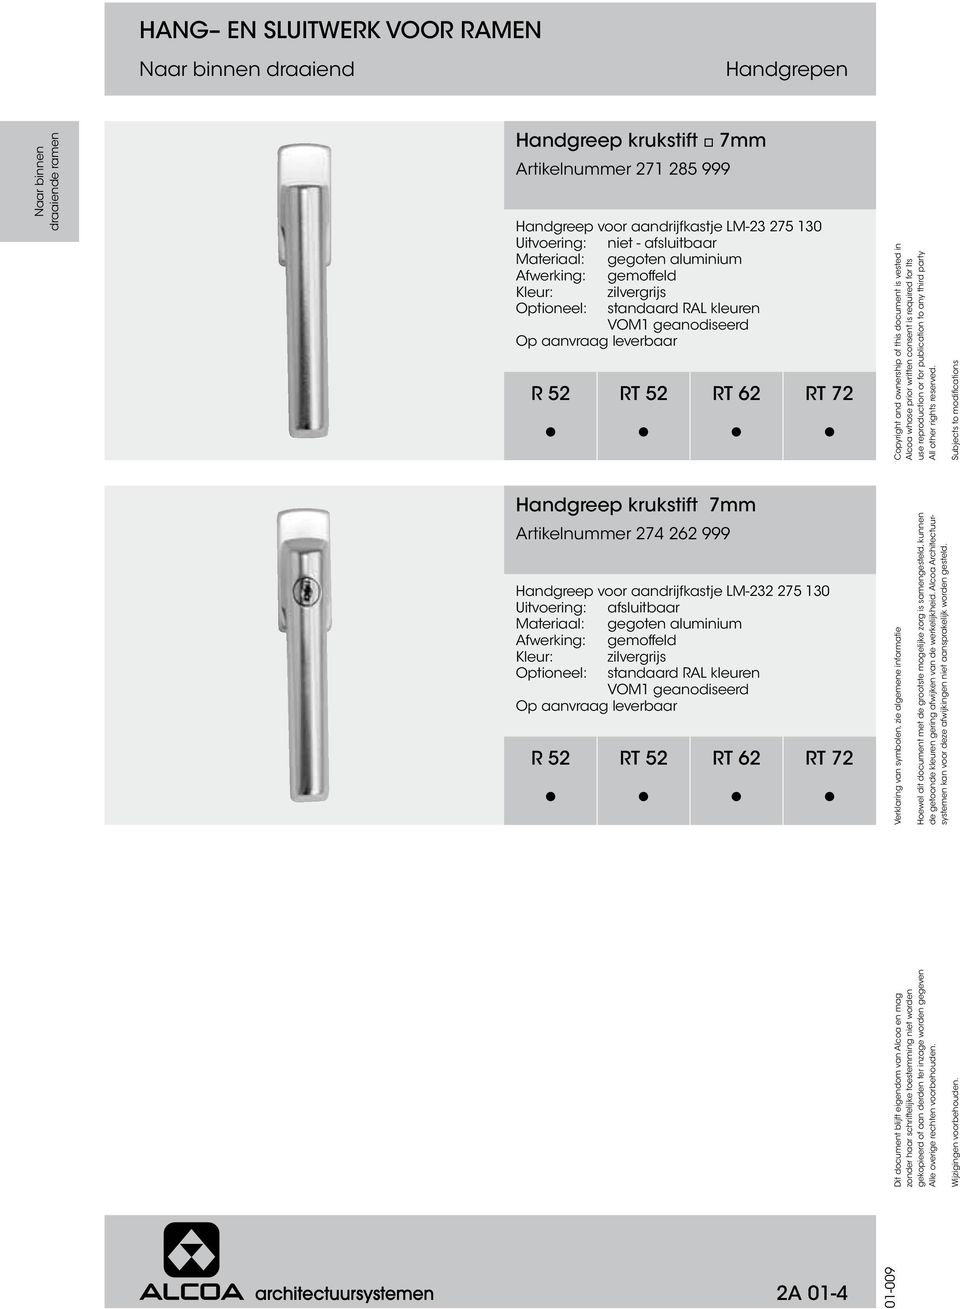 aluminium zilvergrijs VOM1 geanodiseerd Op aanvraag leverbaar Handgreep krukstift 7mm Artikelnummer 274 262 999 Handgreep